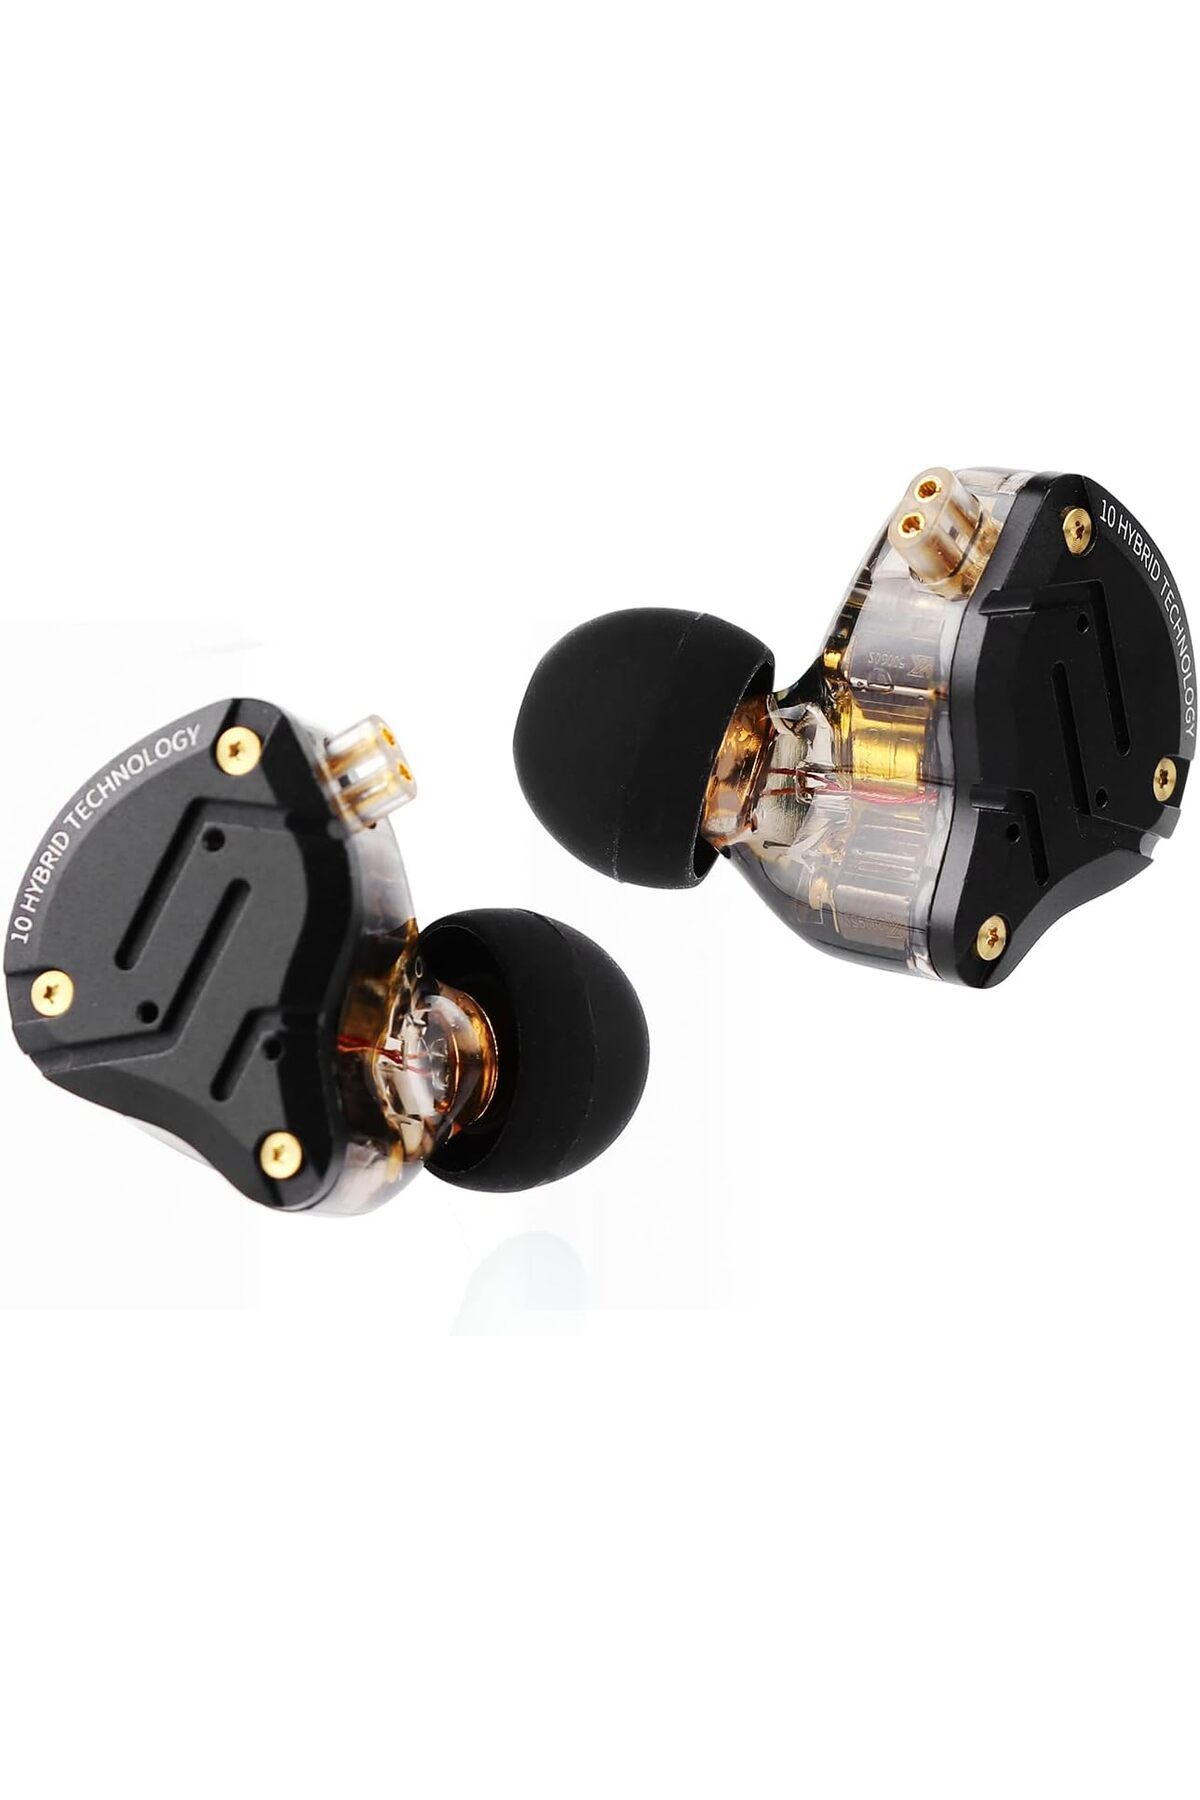 LINSOUL KZ ZS10 Pro 4BA + 1DD  Uyumlu Hibrit Kulak İçi HiFi Metal Kulaklık, Paslanmaz Çelik Ön Plakalı